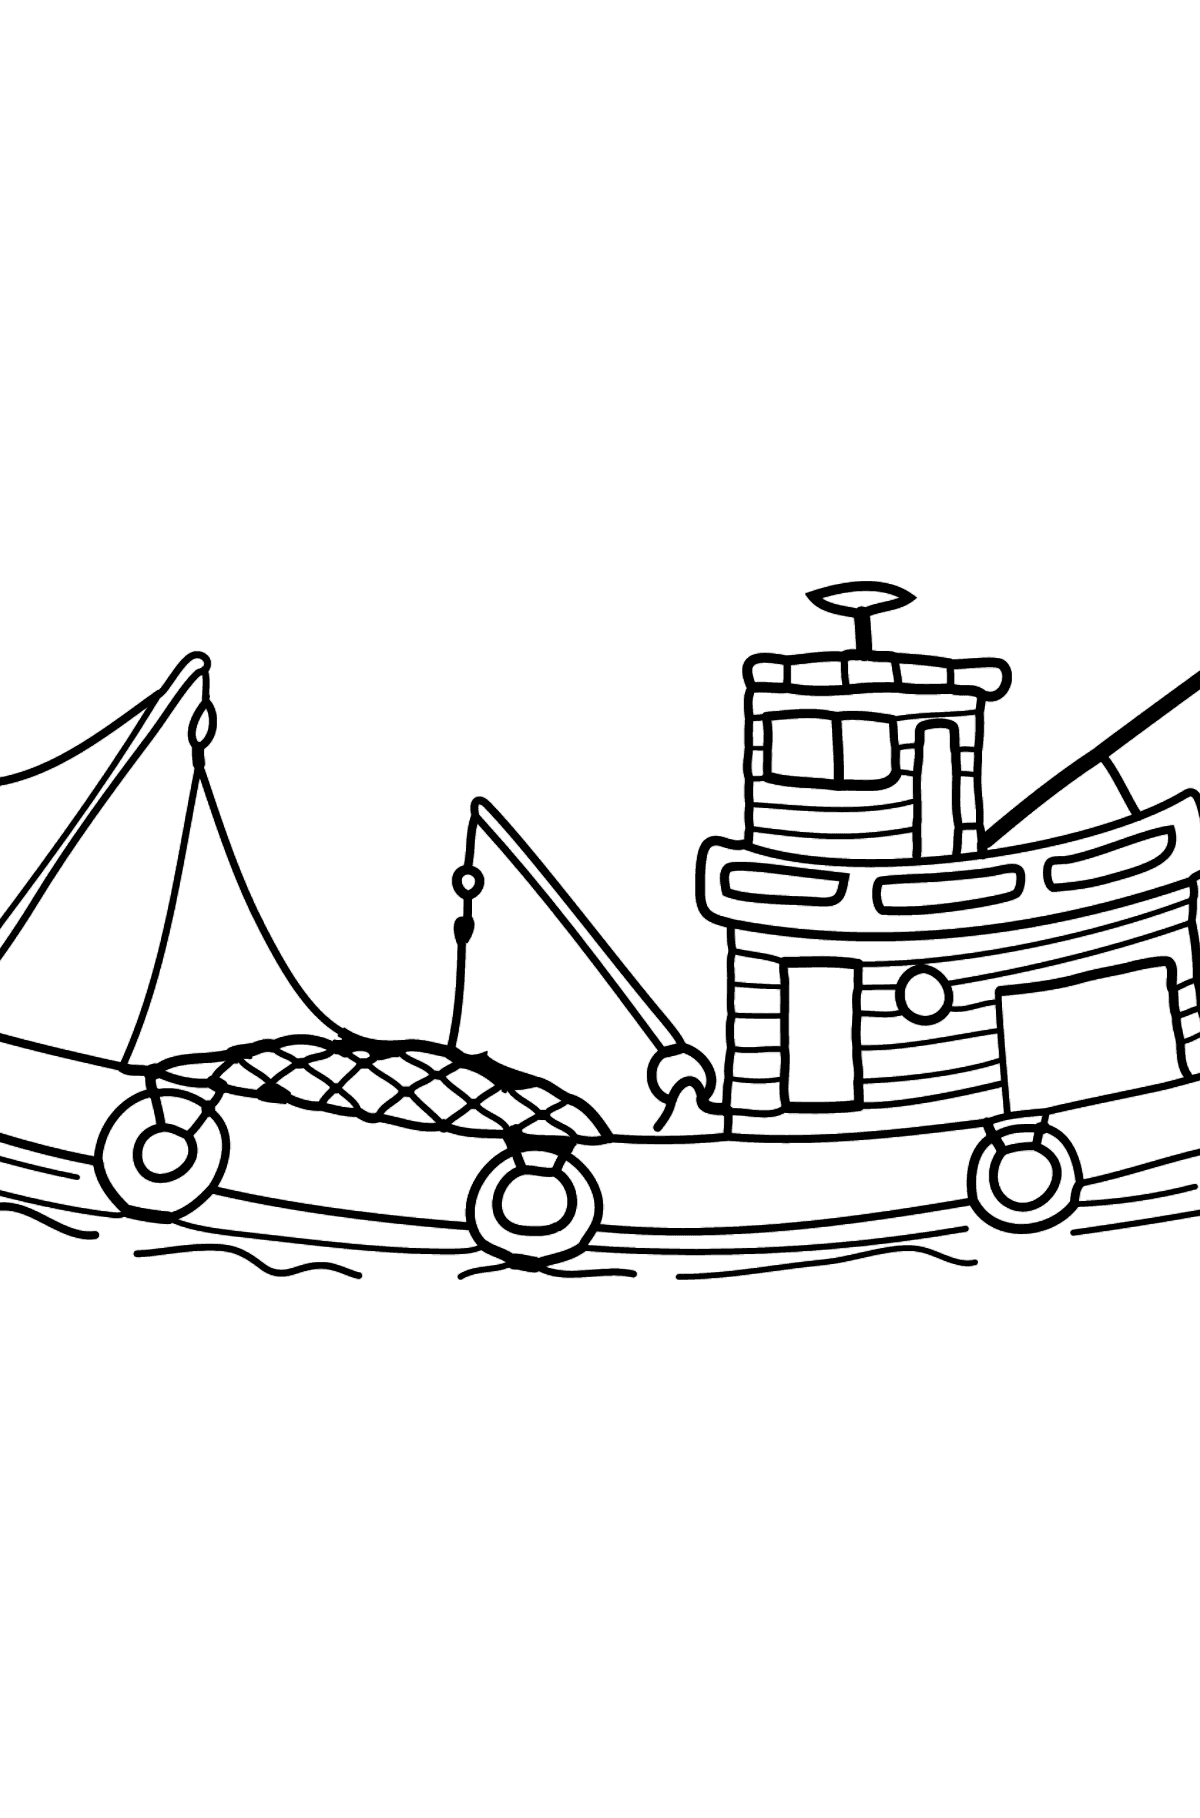 Desenho de barco de pesca para colorir - Imagens para Colorir para Crianças